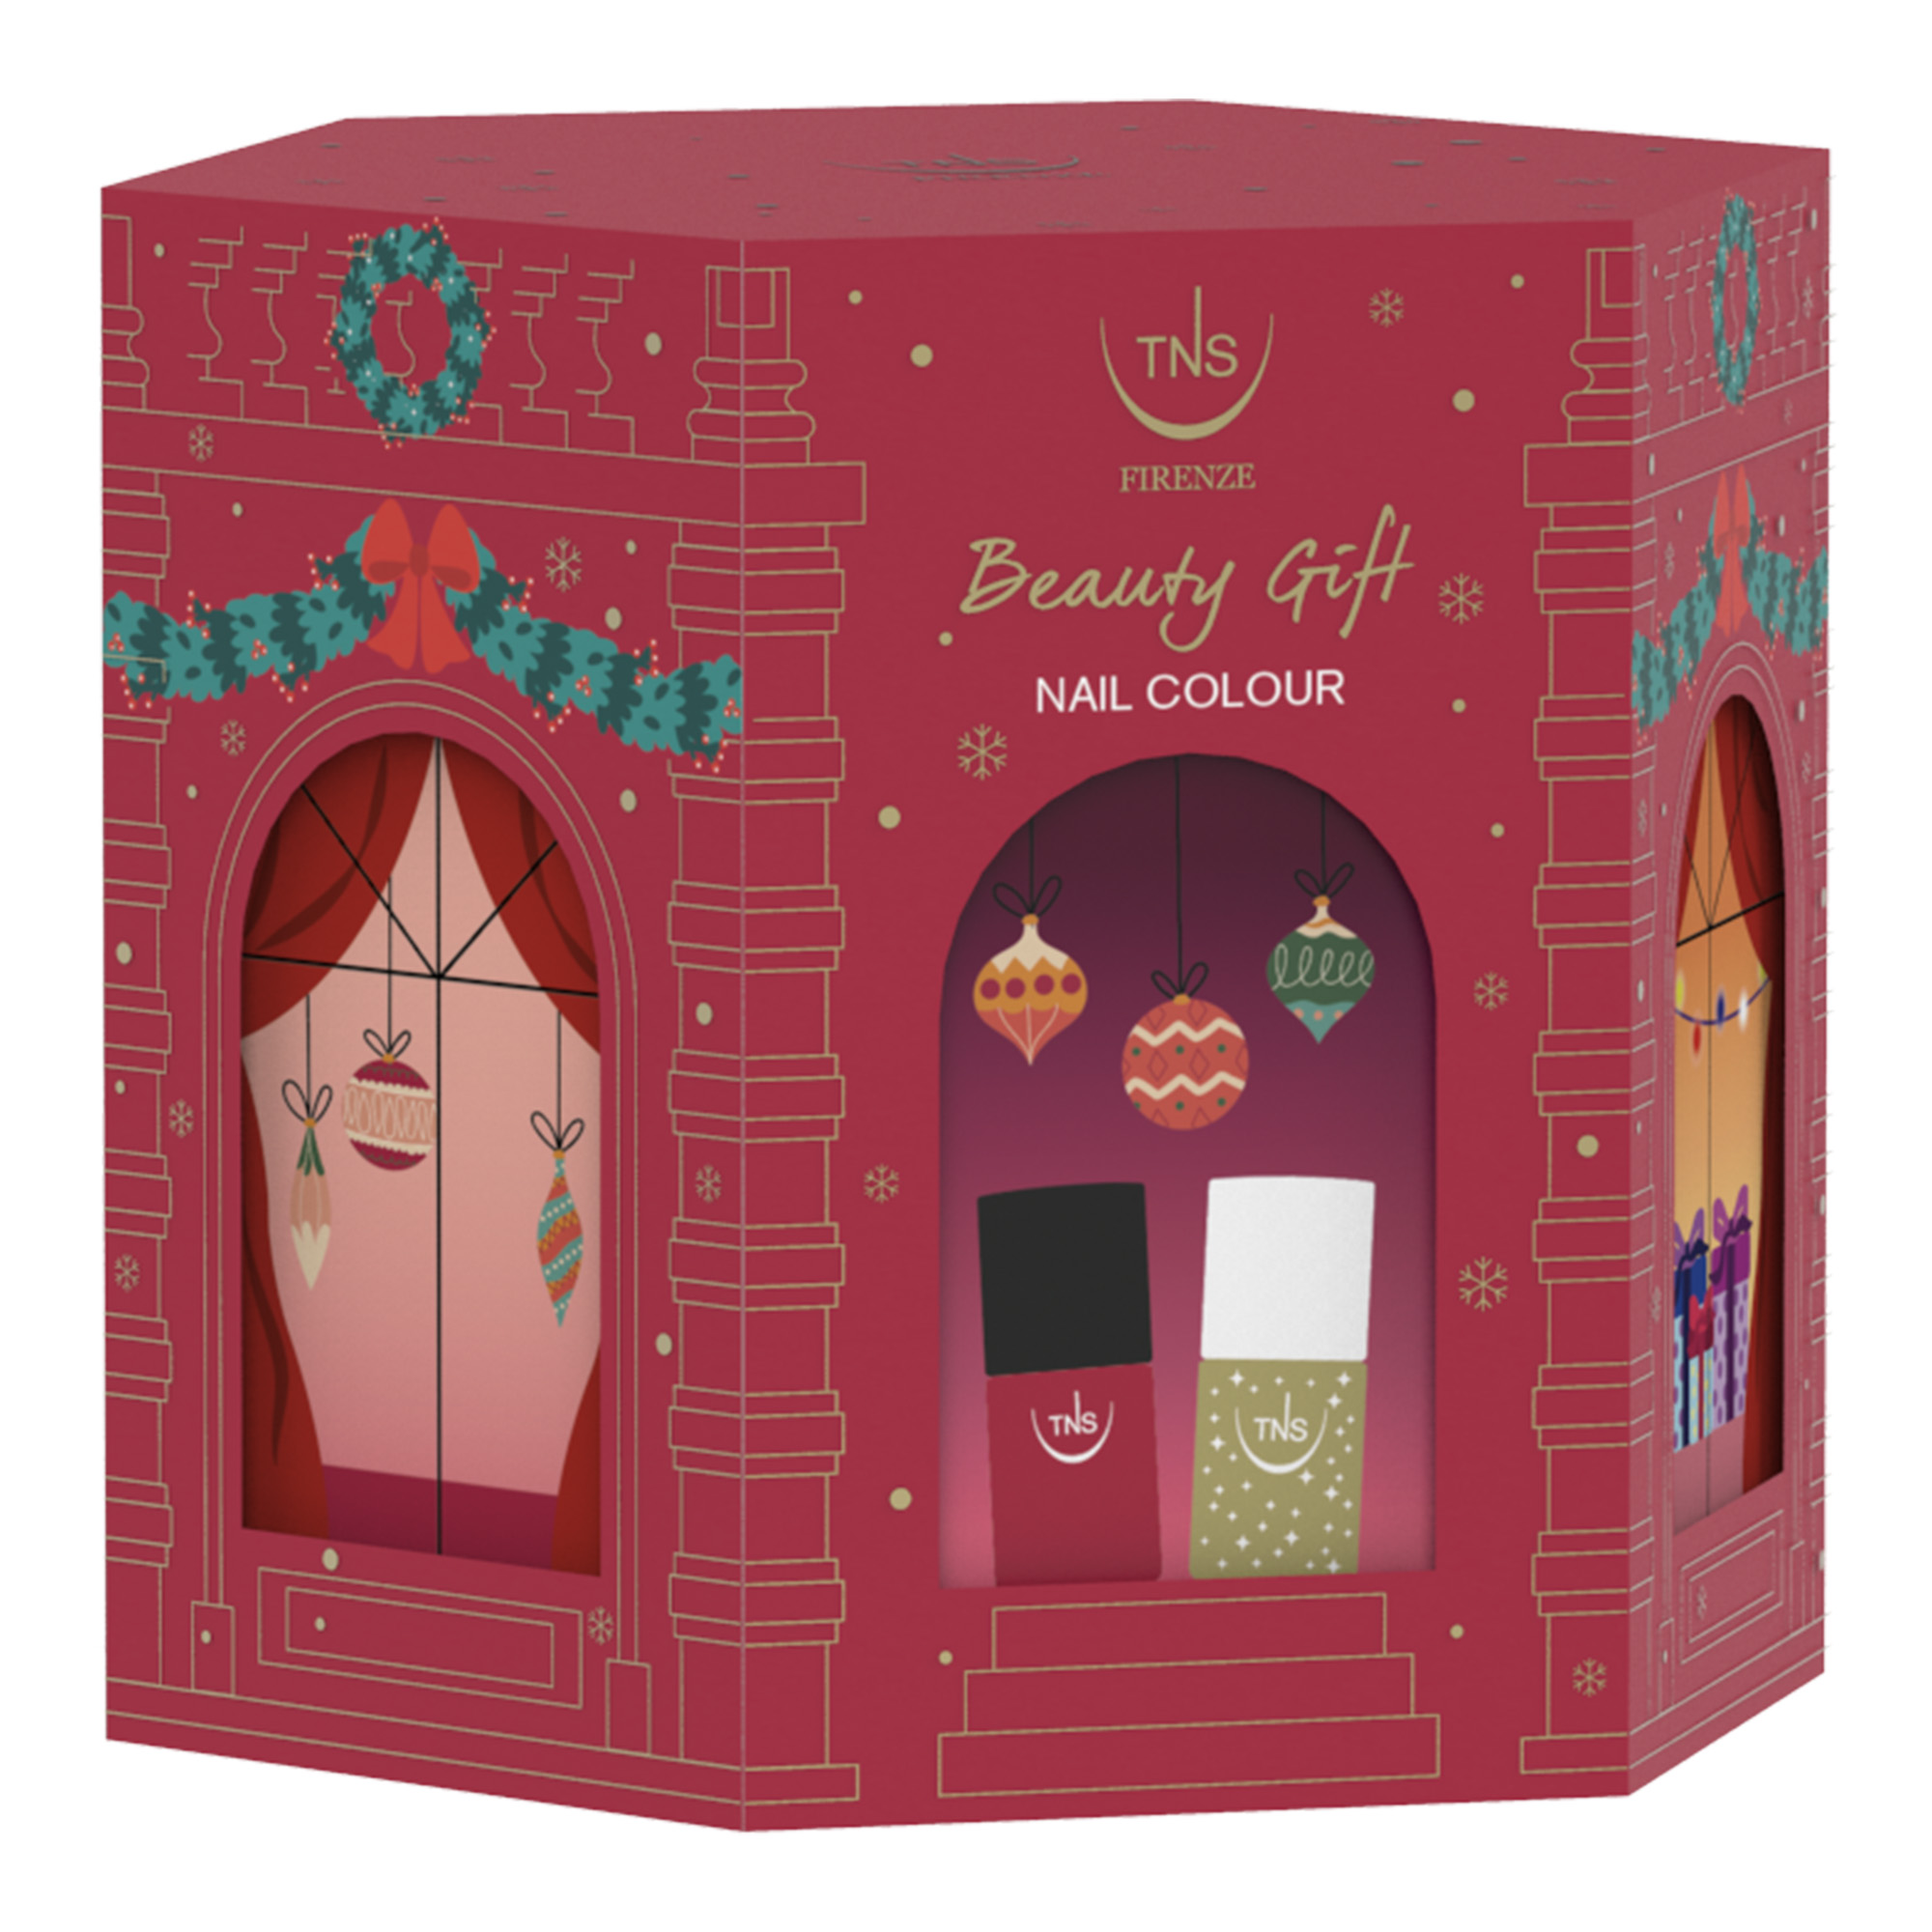 TNS Christmas Beauty Gift Set with Dark Red Nail Polish and Gold Glitter Nail Polish